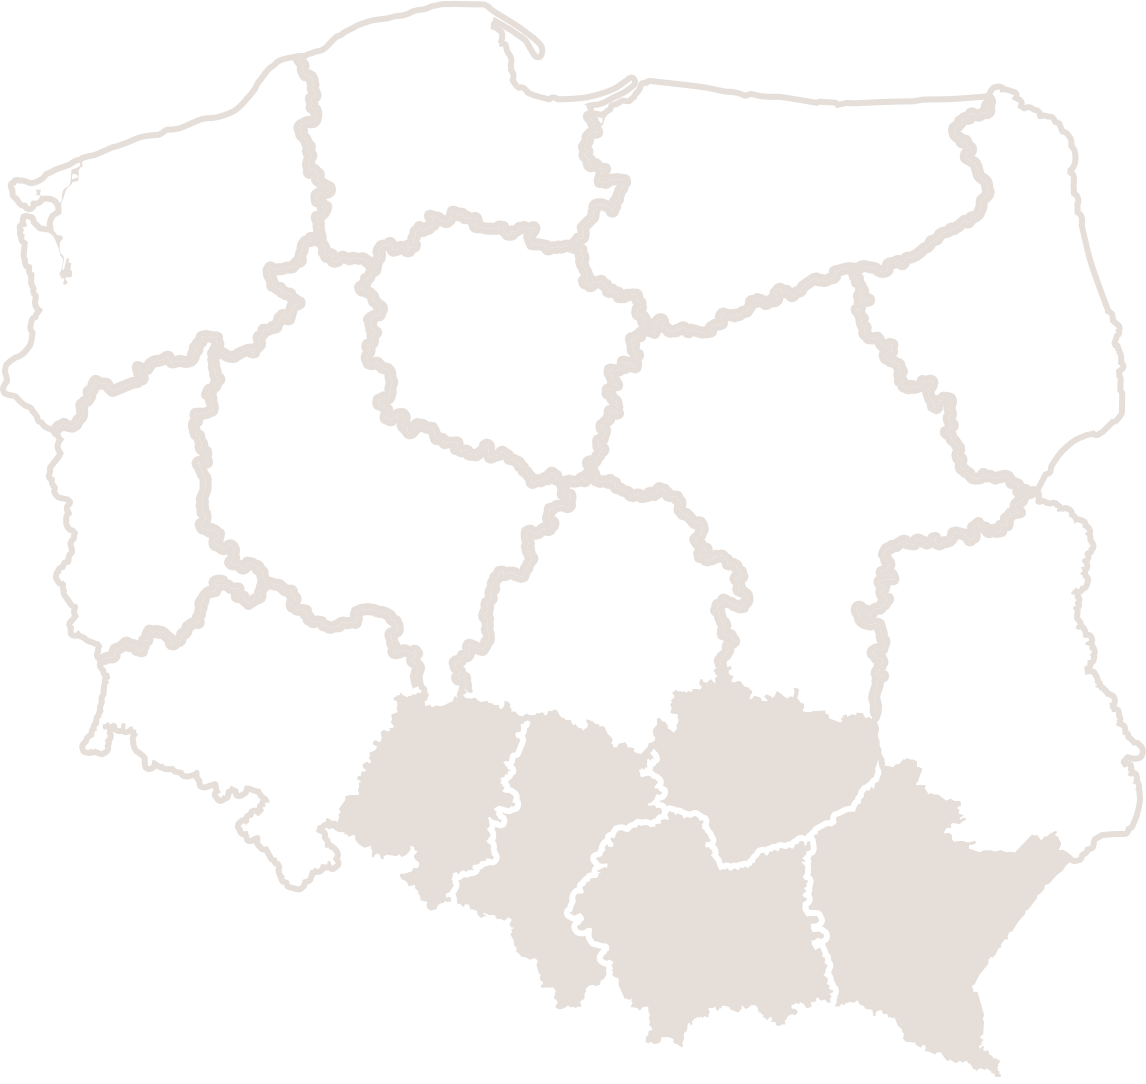 Dział handlowy - regiony: Province: Opole, Silesia, Małopolska, Podkarpacie, Świętokrzyskie